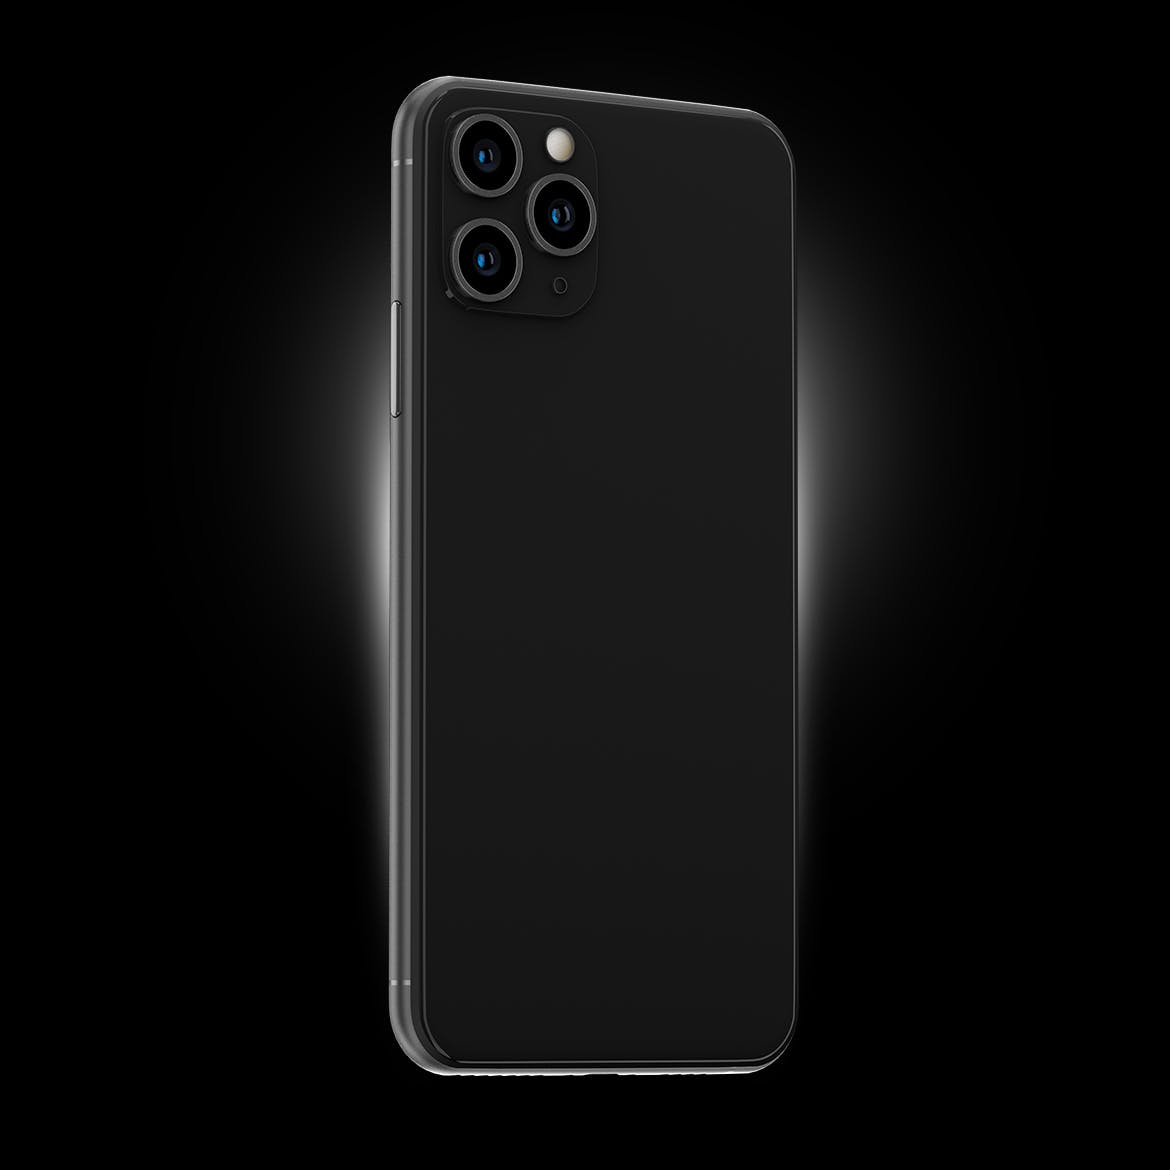 黑色iPhone 11 Pro Max智能手机APP设计预览素材中国精选样机 Phone 11 Black PSD Mockups插图(3)